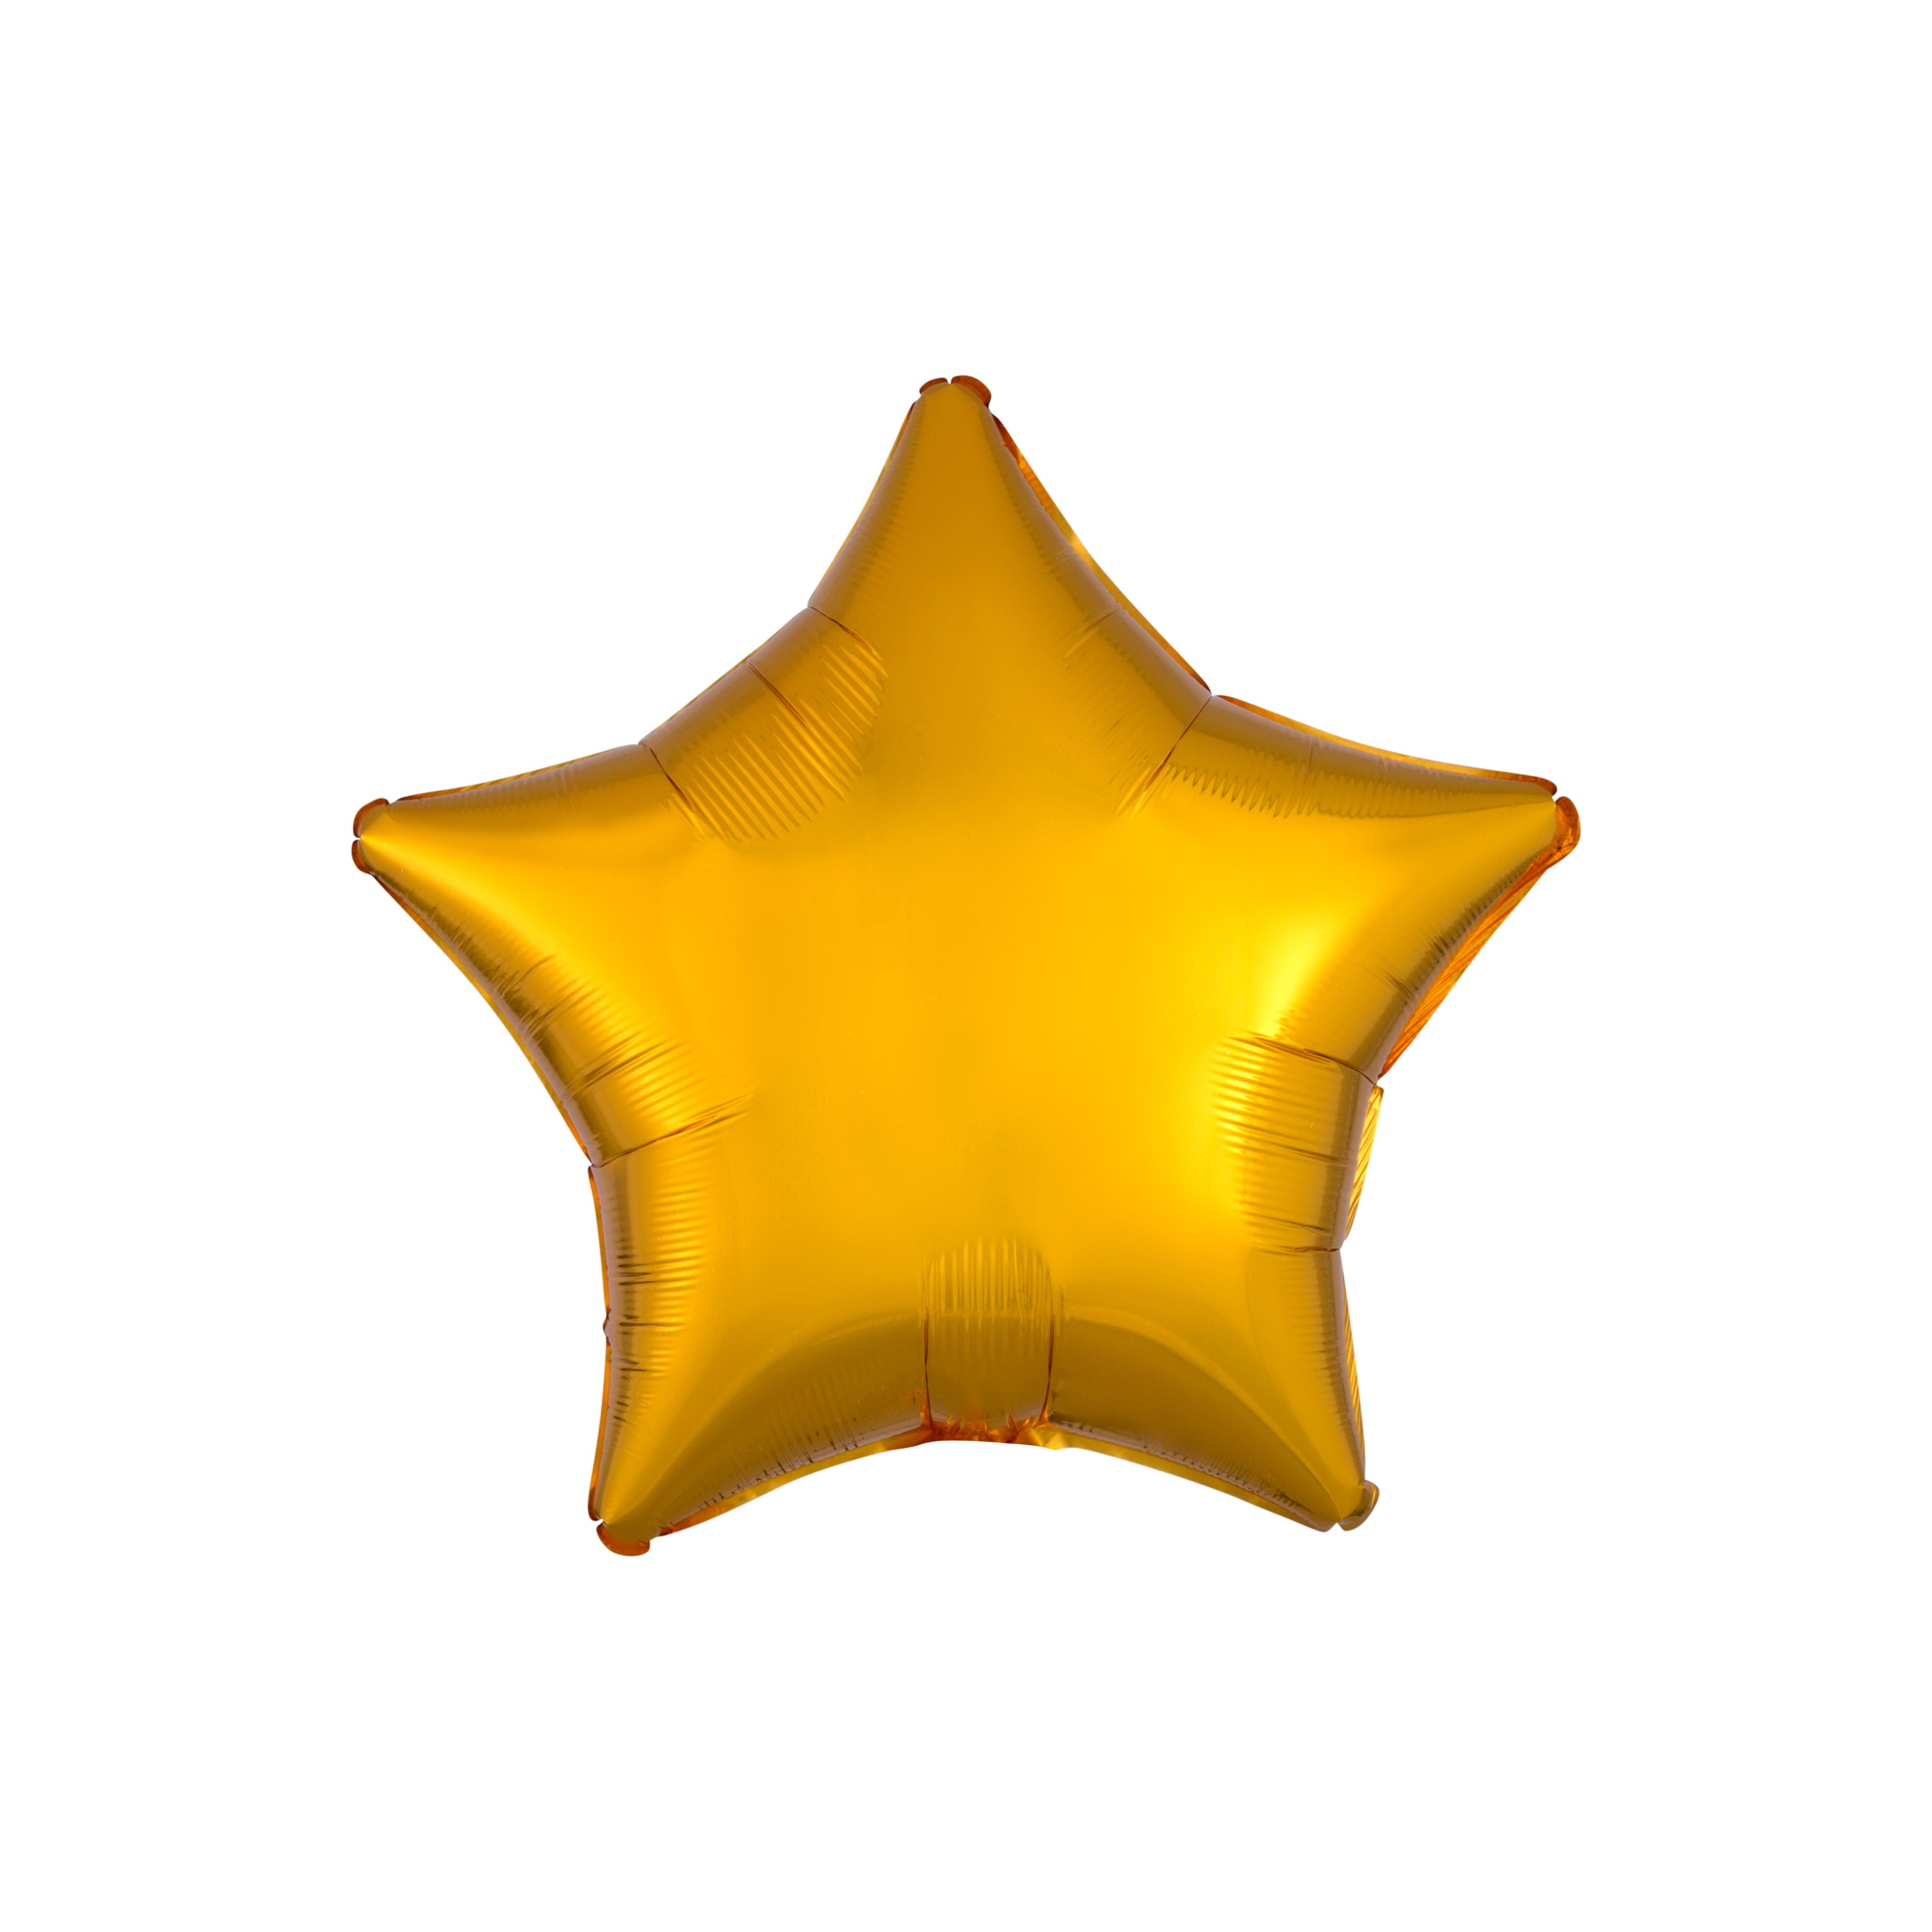 19" Metallic Star Mylar Balloon